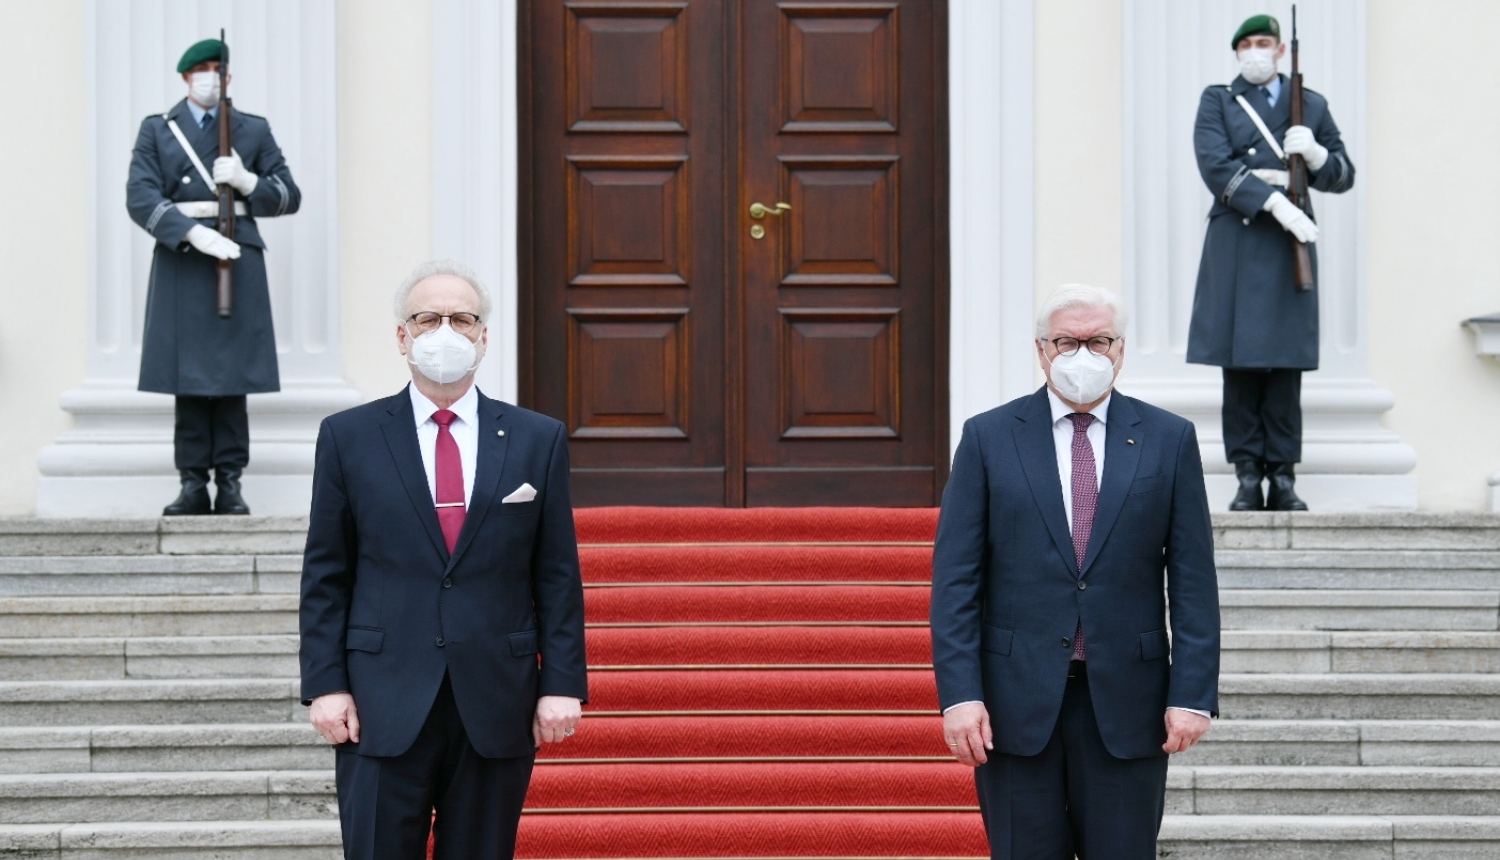 Valsts prezidents Egils Levits un Vācijas prezidents Franks Valters Šteinmeiers